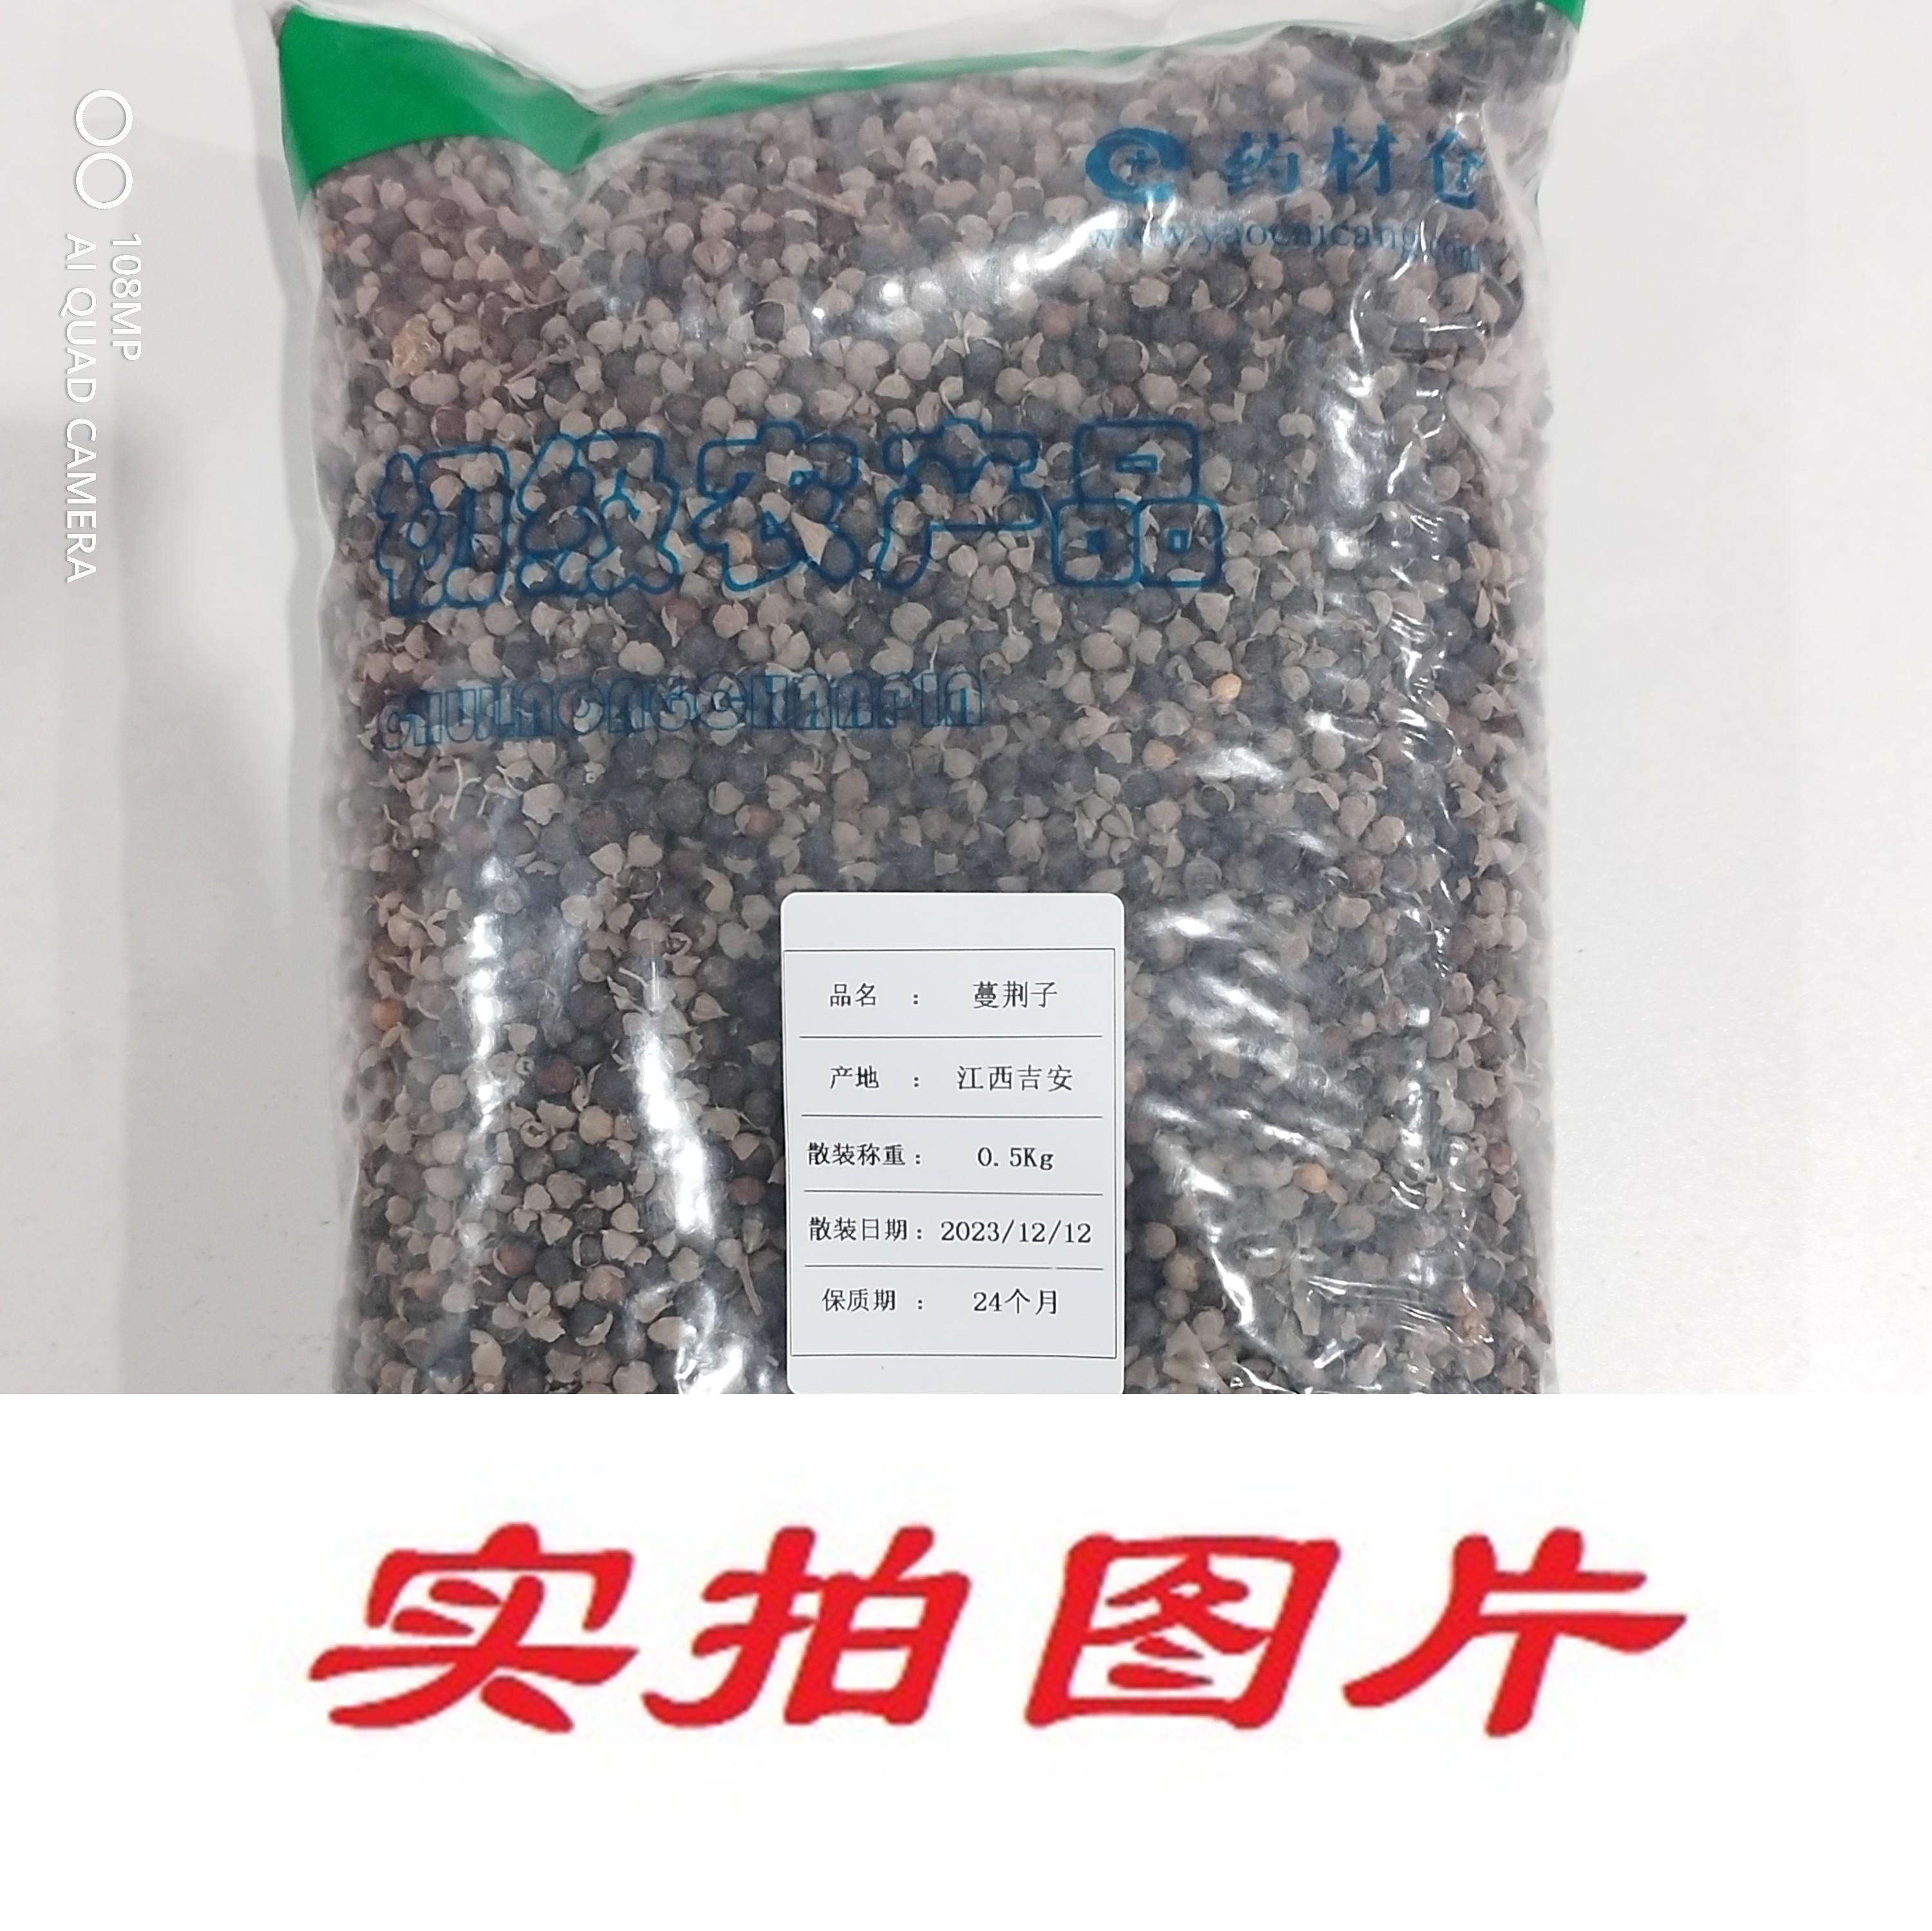 【】蔓荆子0.5kg-农副产品